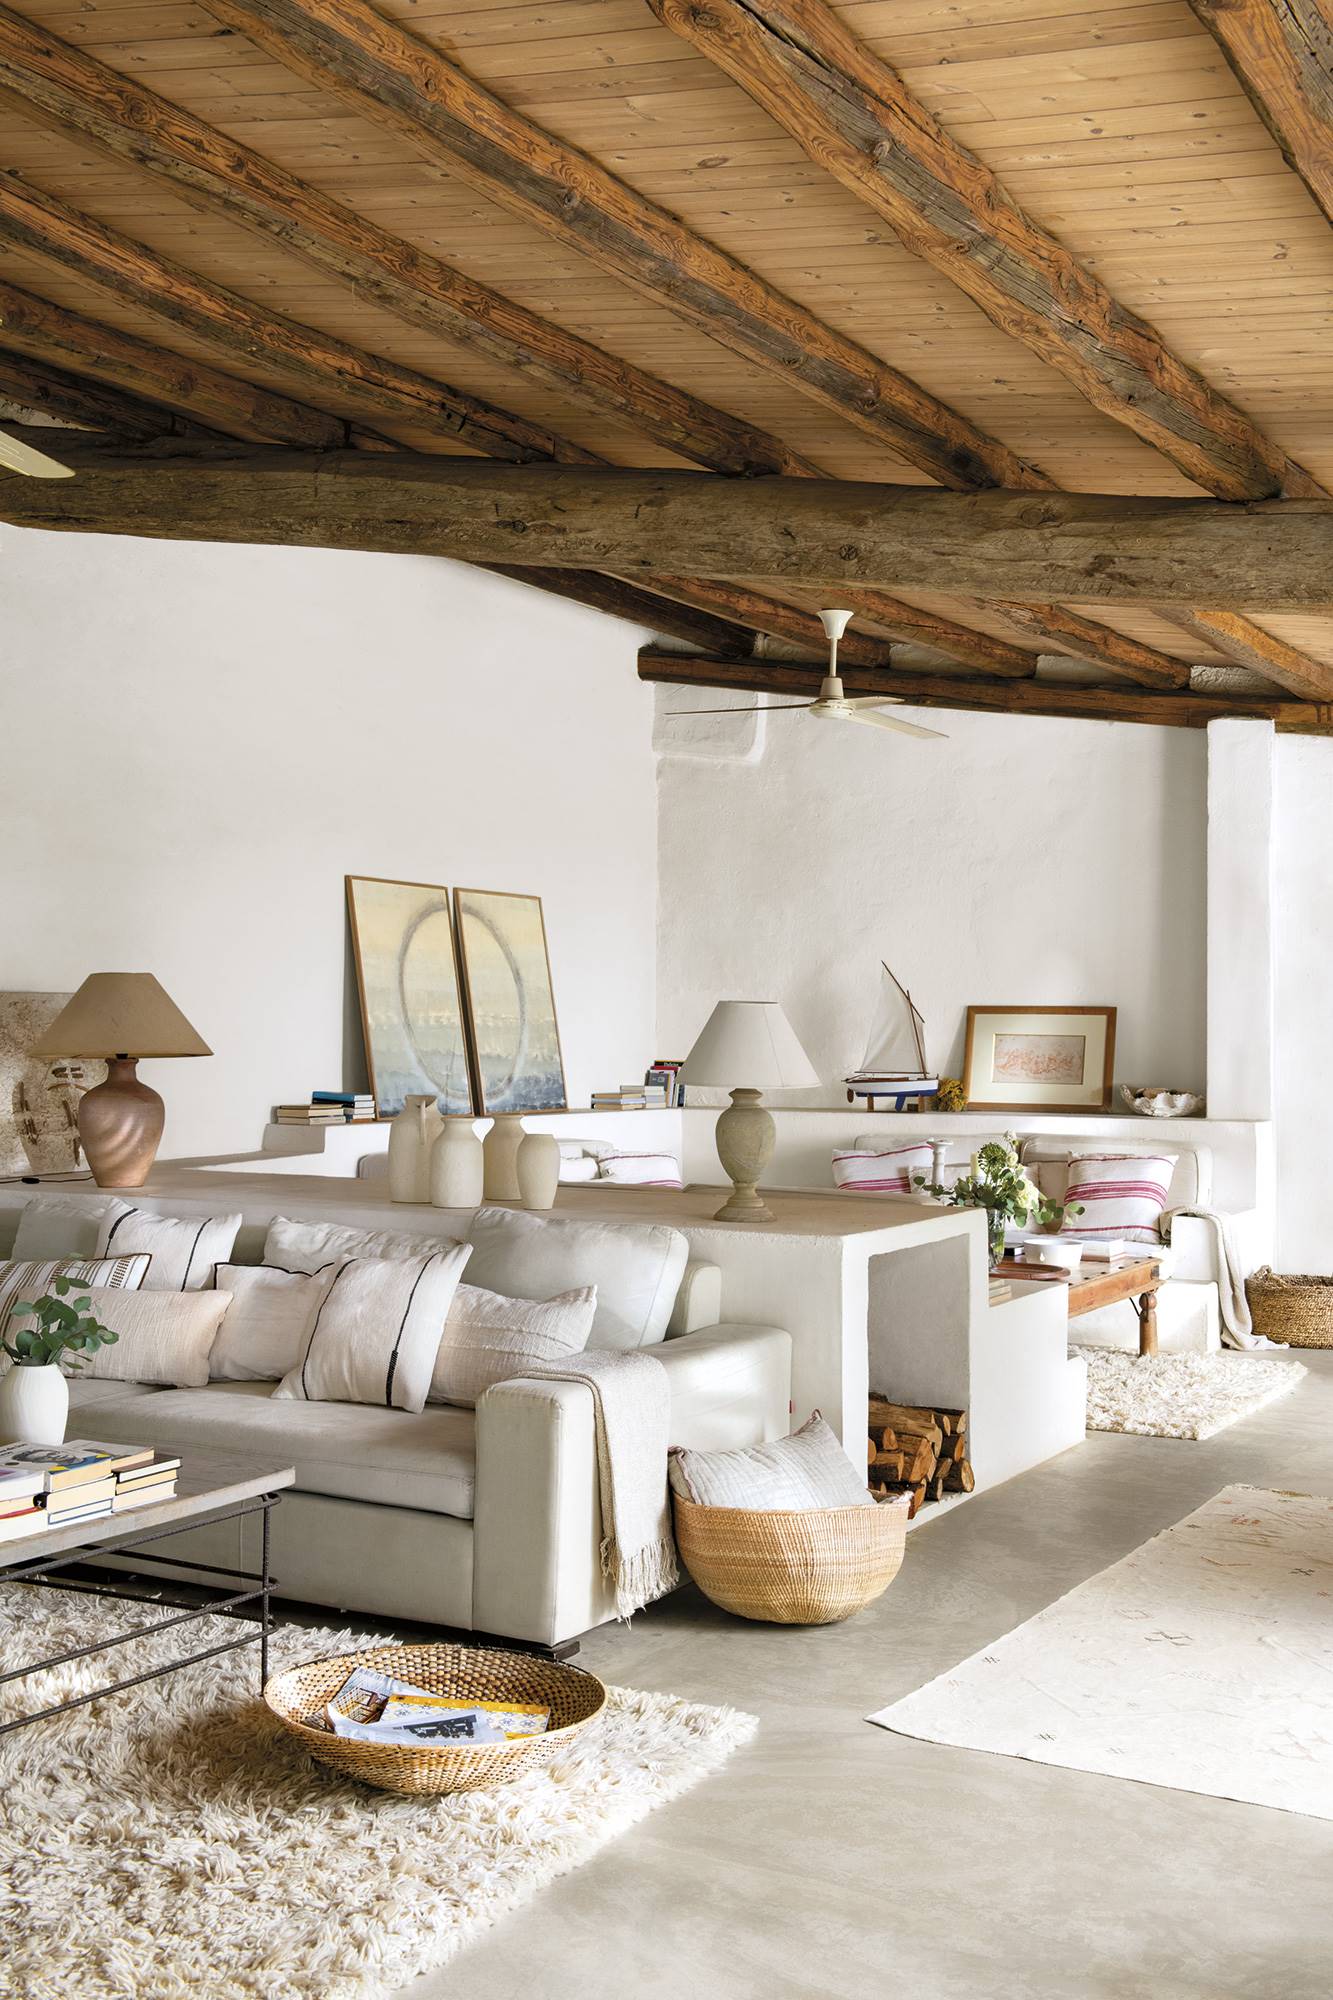 Salón mediterráneo blanco con muebles de obra y vigas en el techo.